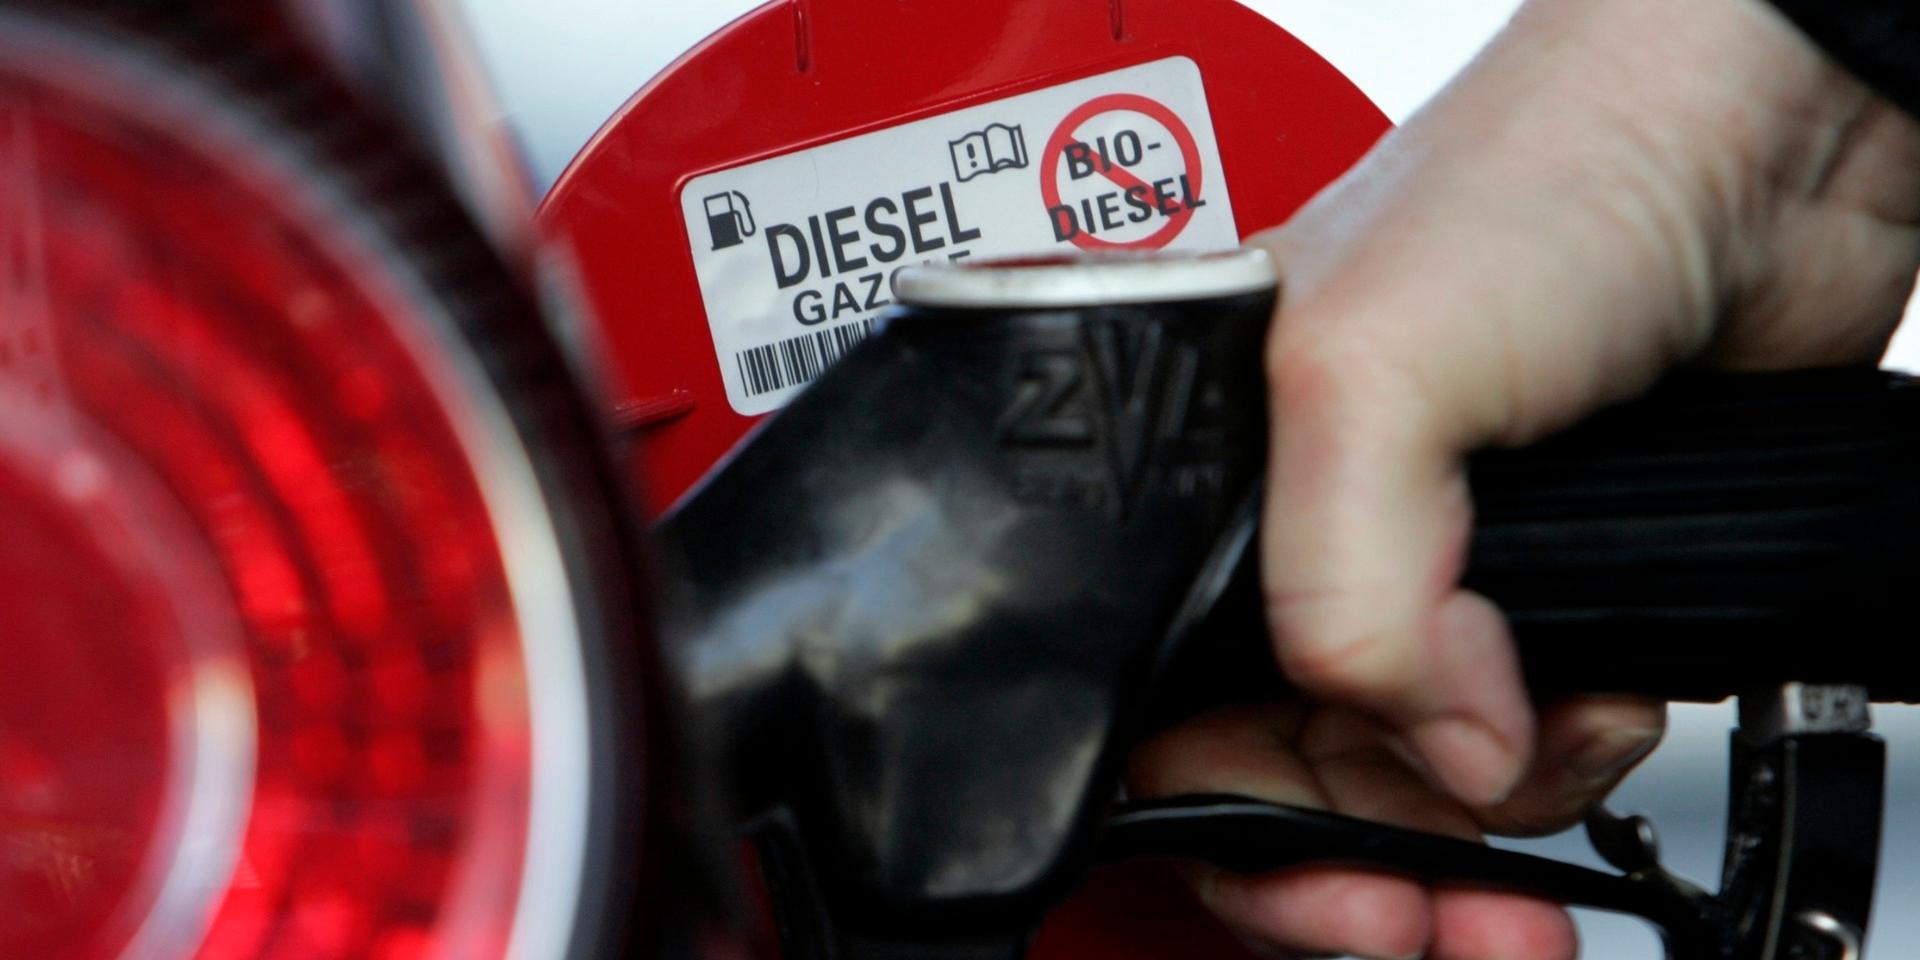 I dag bestraffas vi dieselbilsägare genom en fullständig orimlig beskattning av diesel, tycker skribenten.